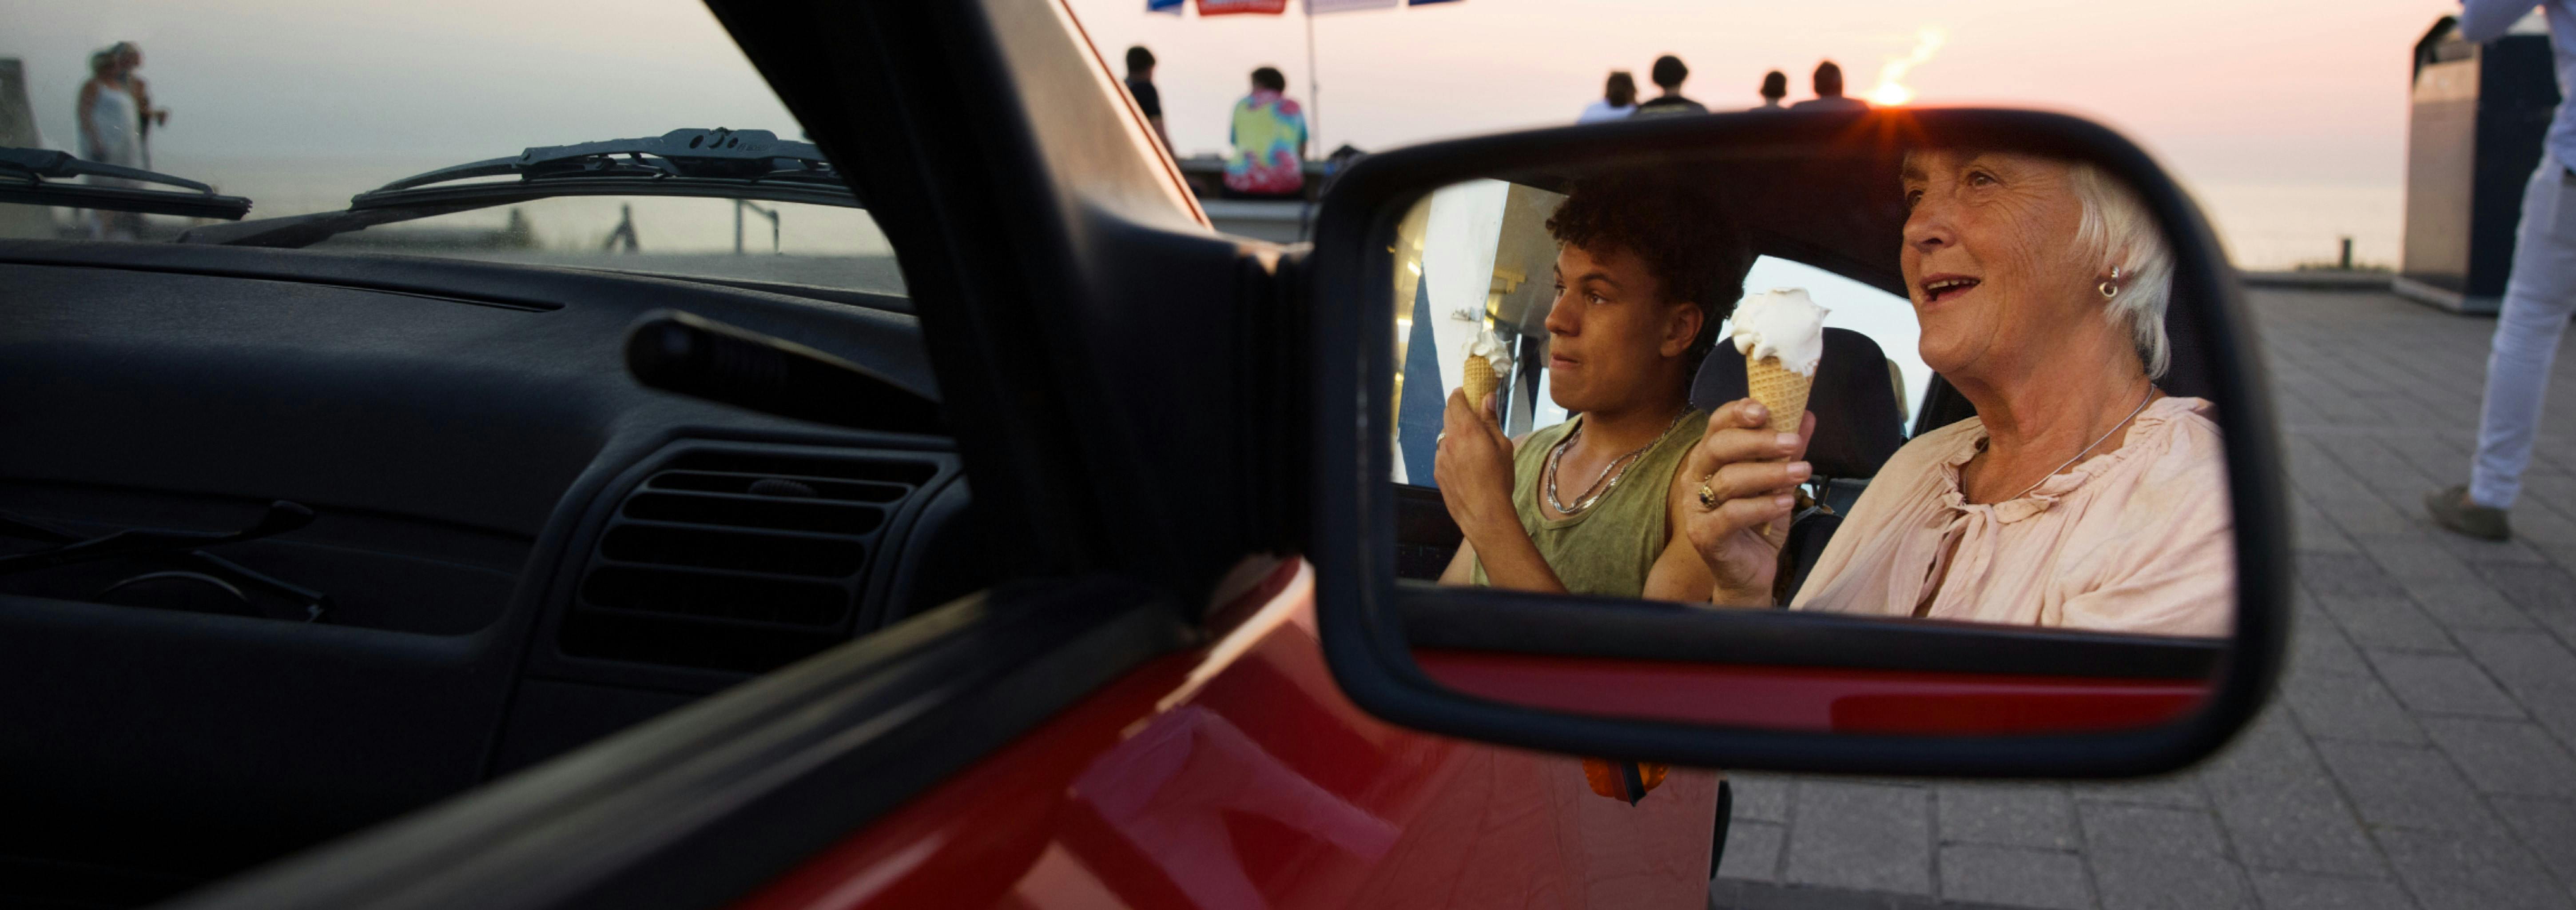 Vrouw en haar kleinzoon in een stilstaande auto, gezien via de zijspiegel